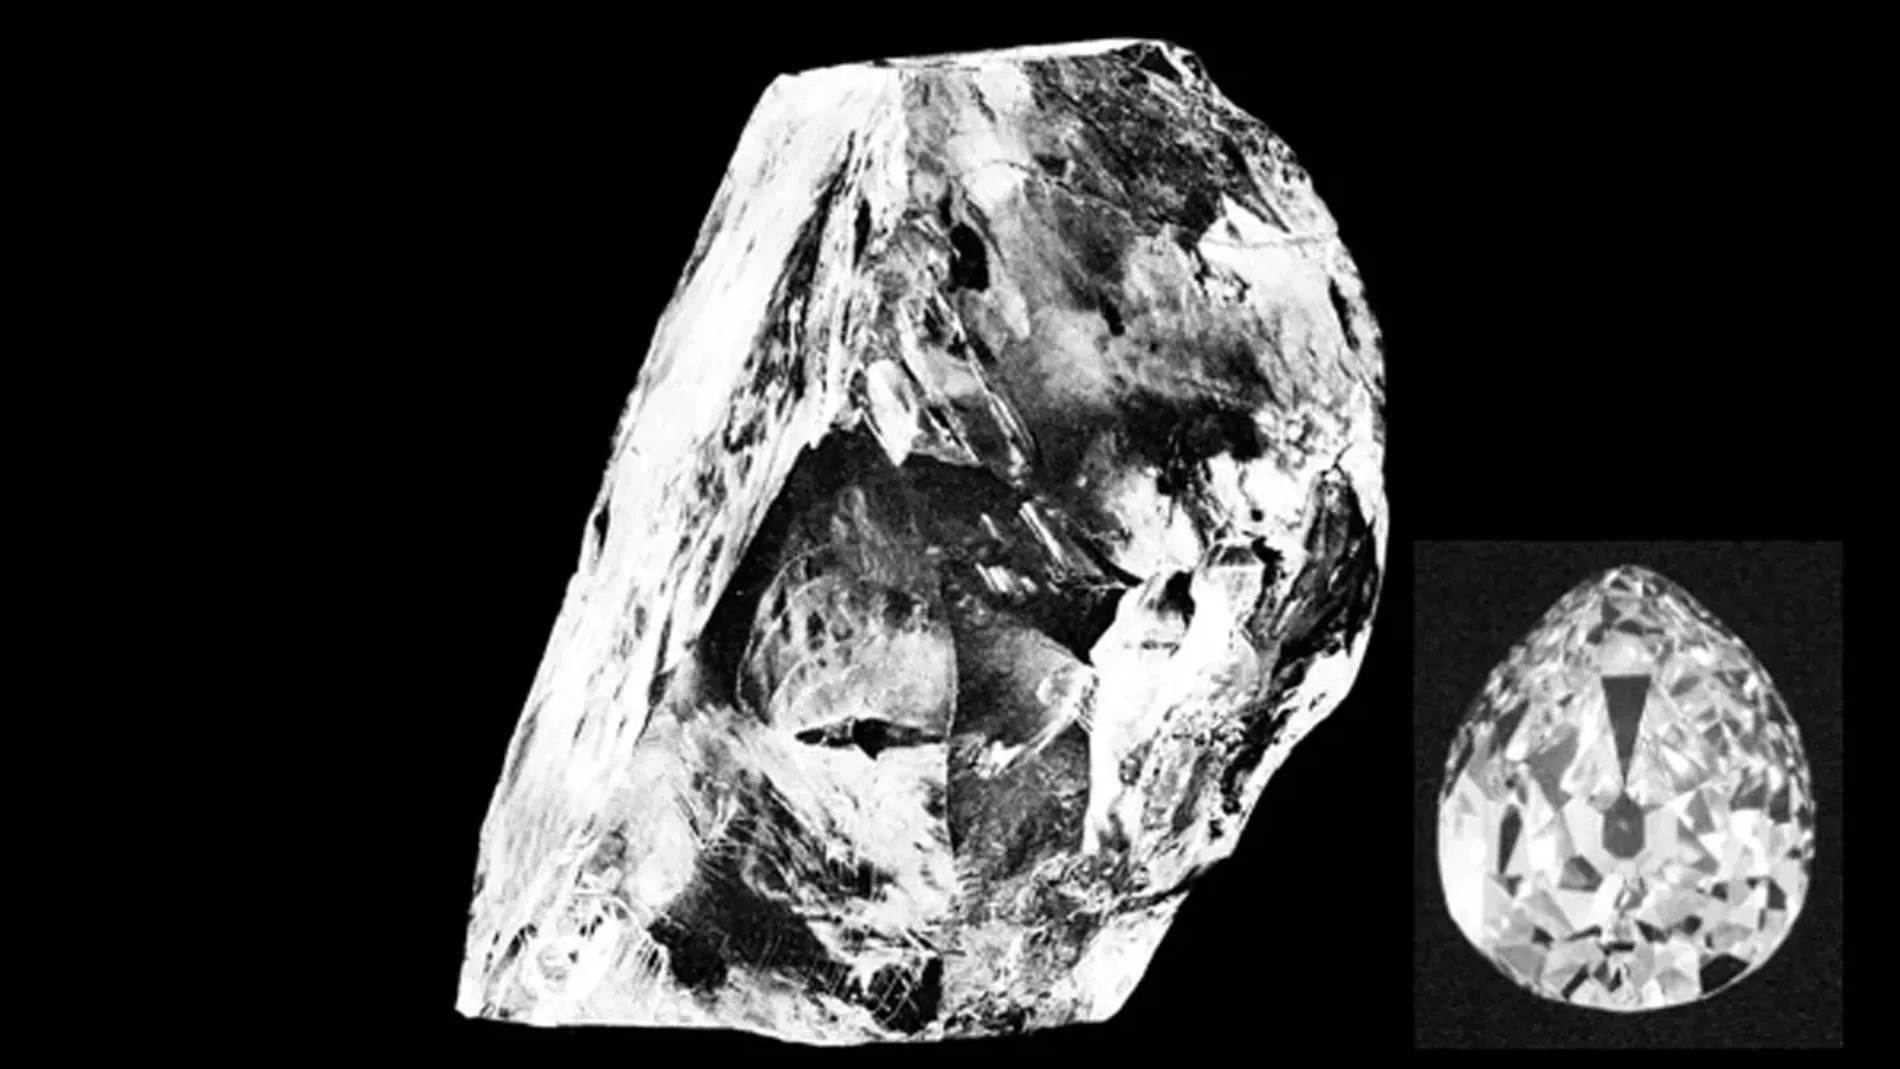 Diamante cullinan en bruto, uno de los más grandes jamás encontrado, la lado, una de las piezas extraidas de él